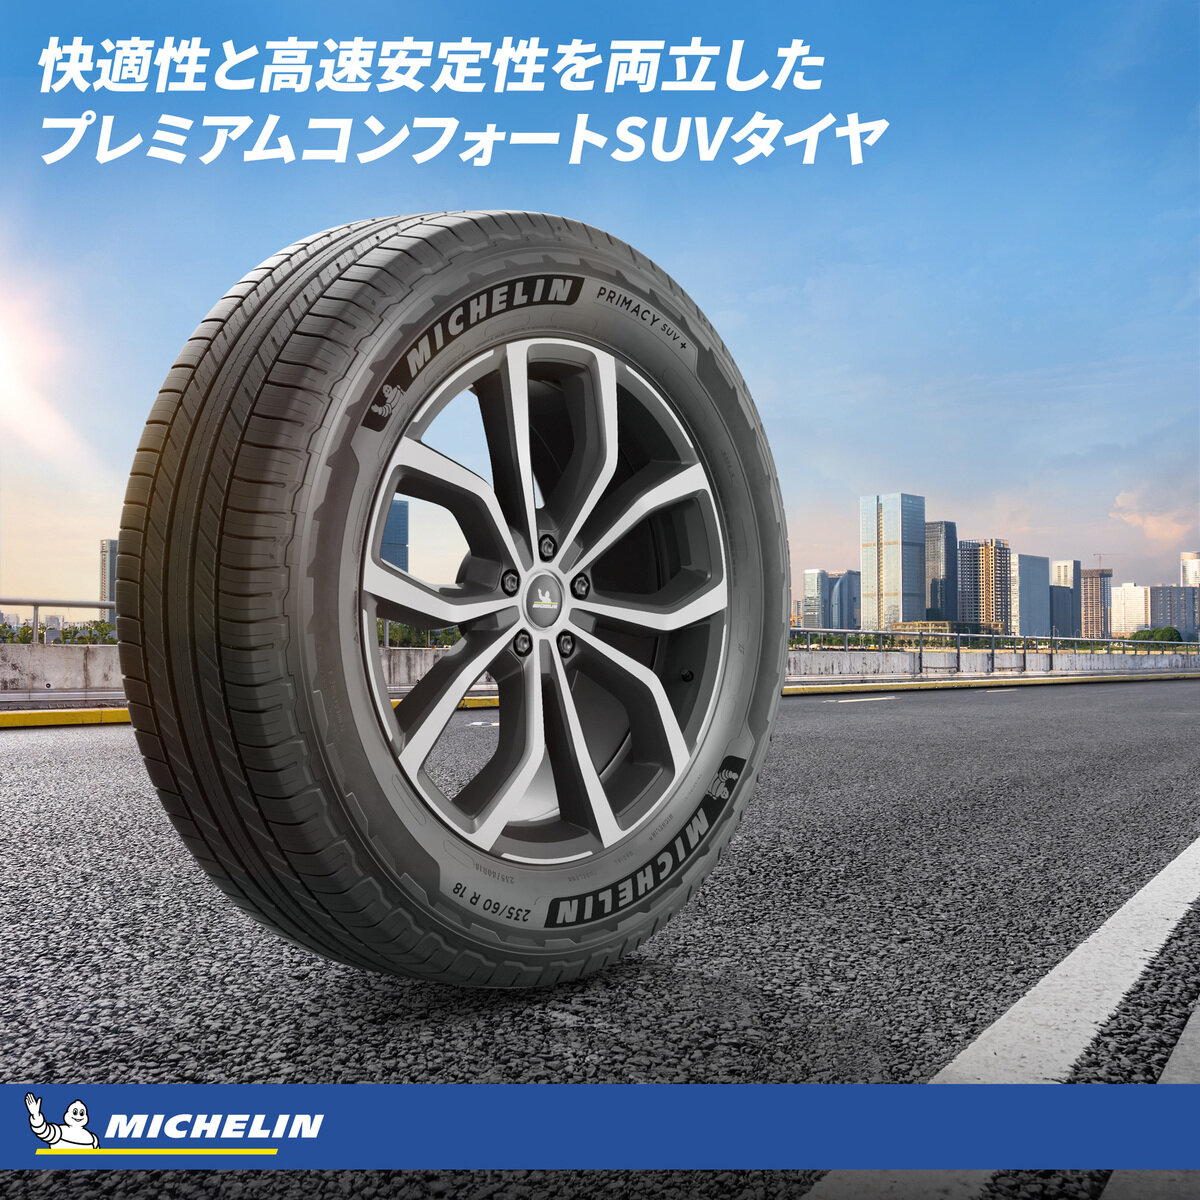 Michelin 265/65 R17 112H TL PRIMACY SUV+ MI | Costco Japan